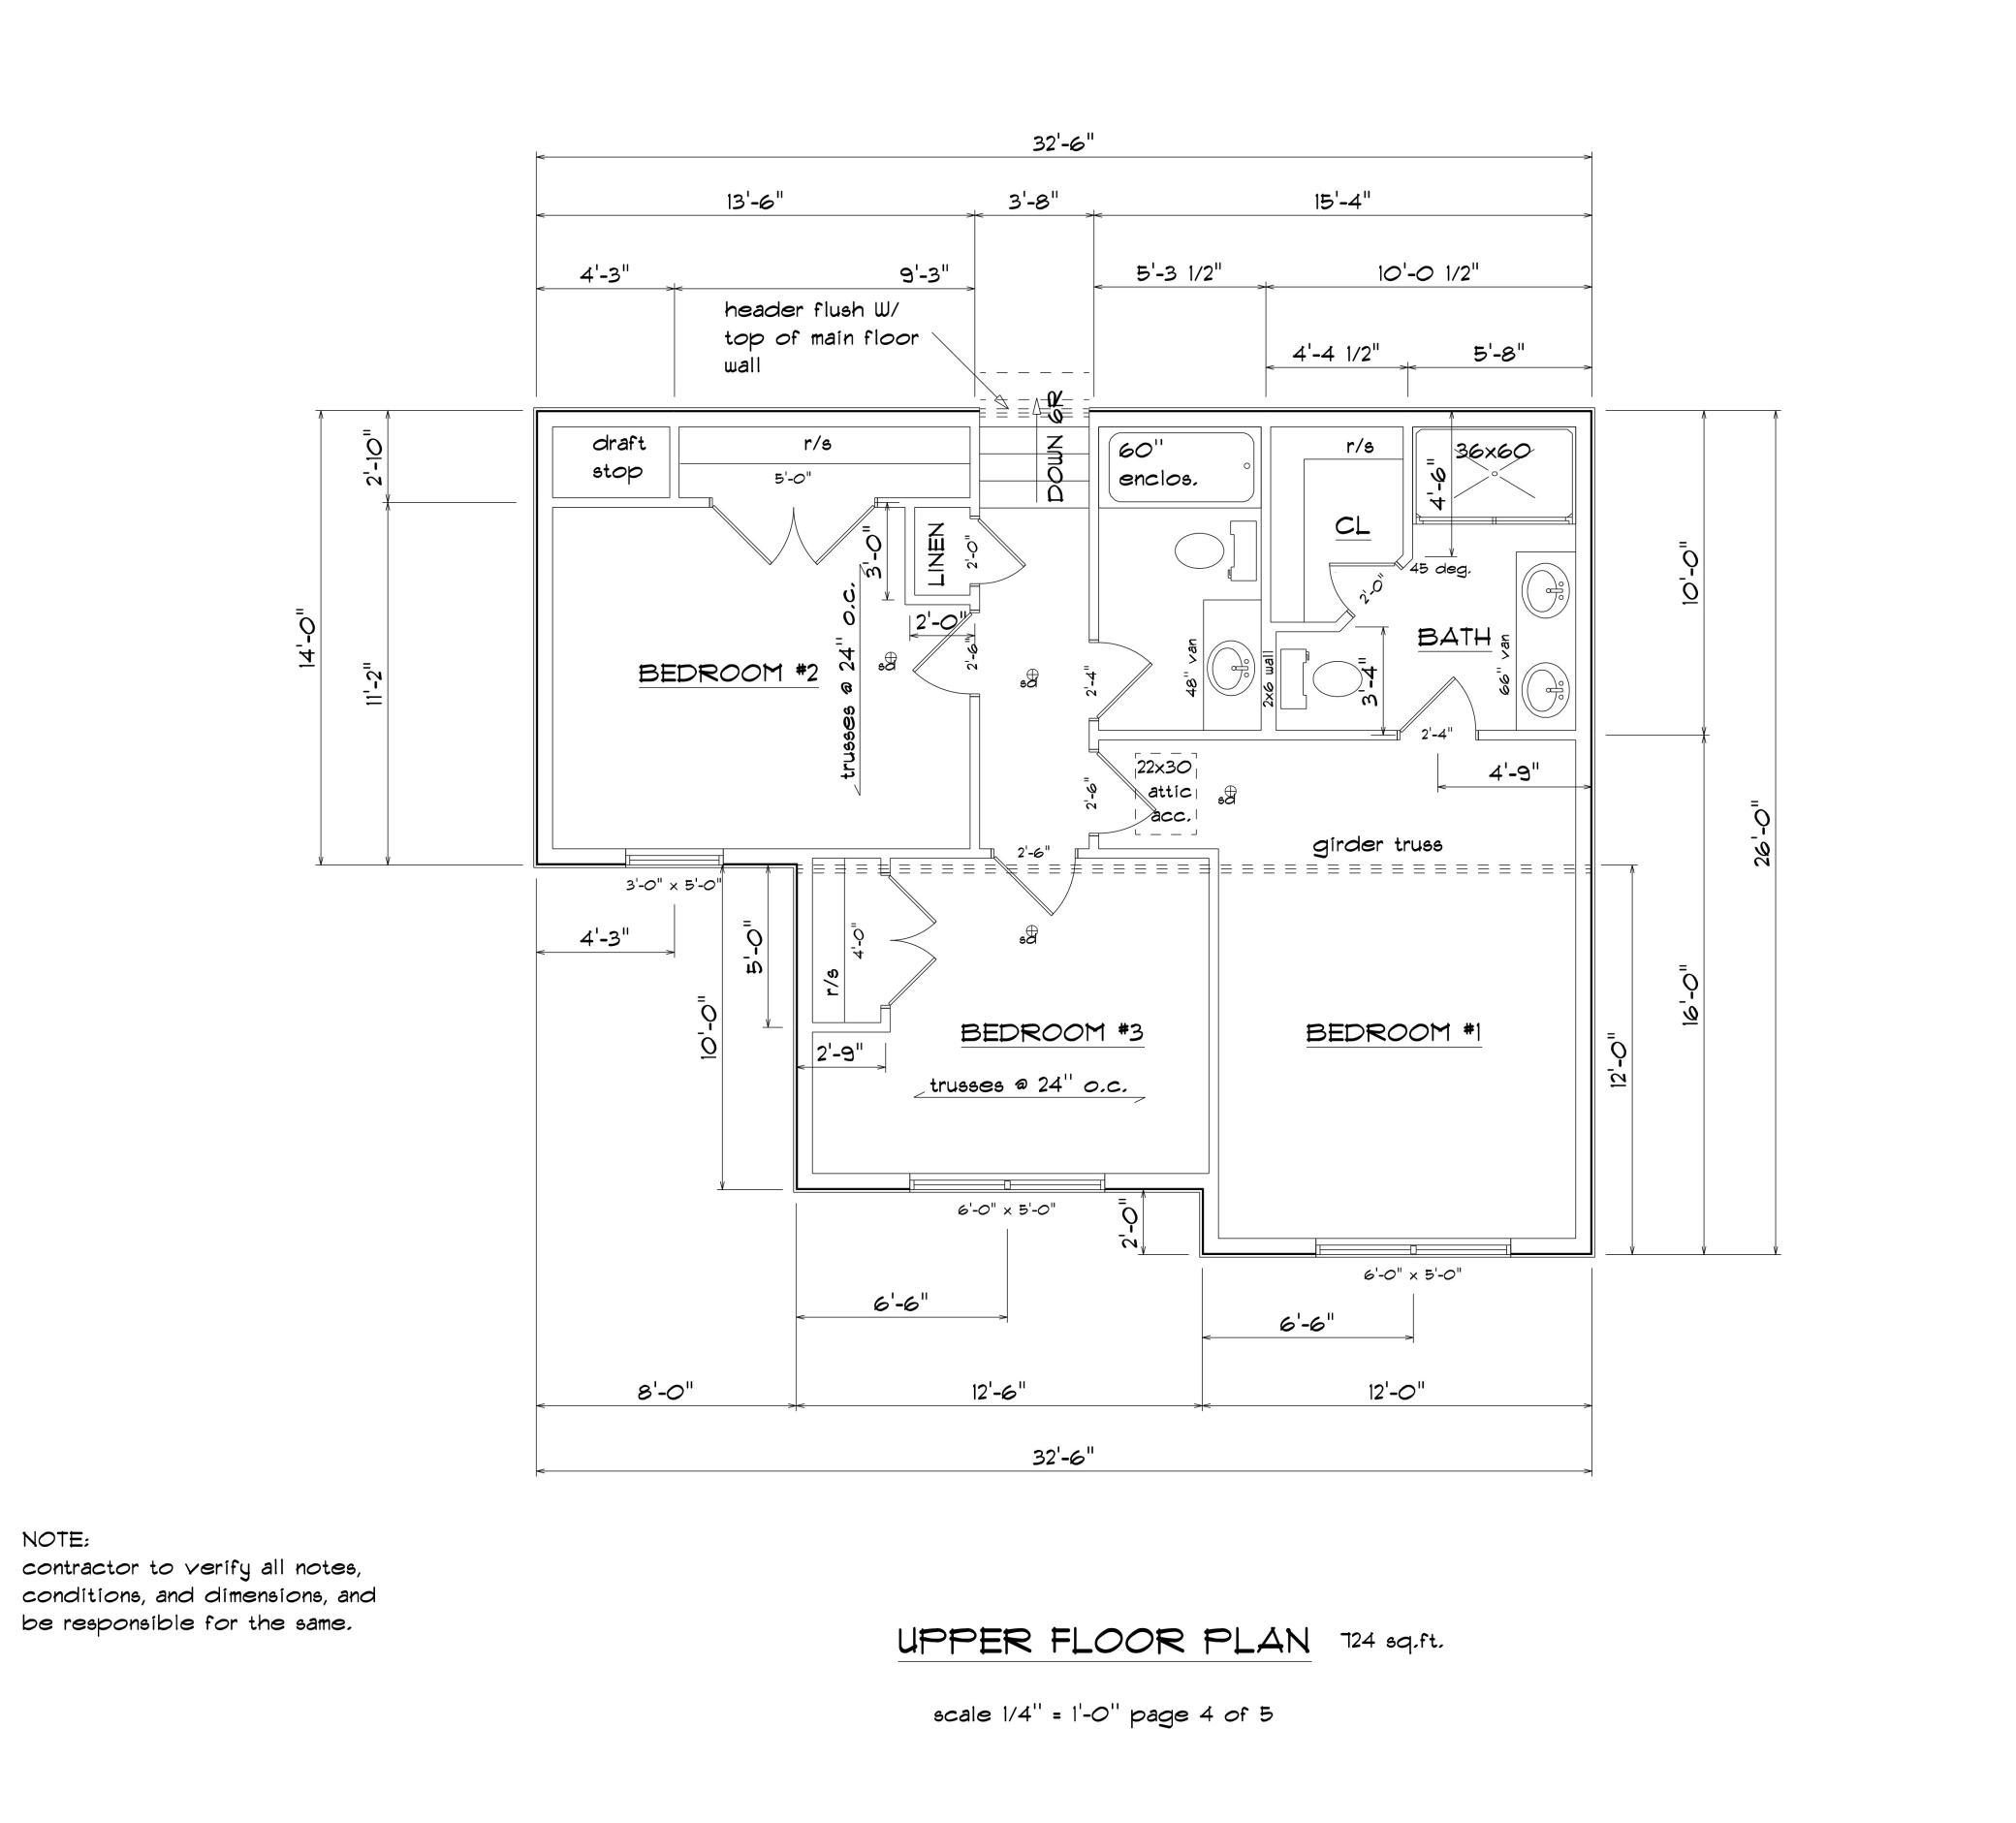 2064 sq.ft. multi level GR upper floor plan 7.9.23 Pg.4of5.jpg